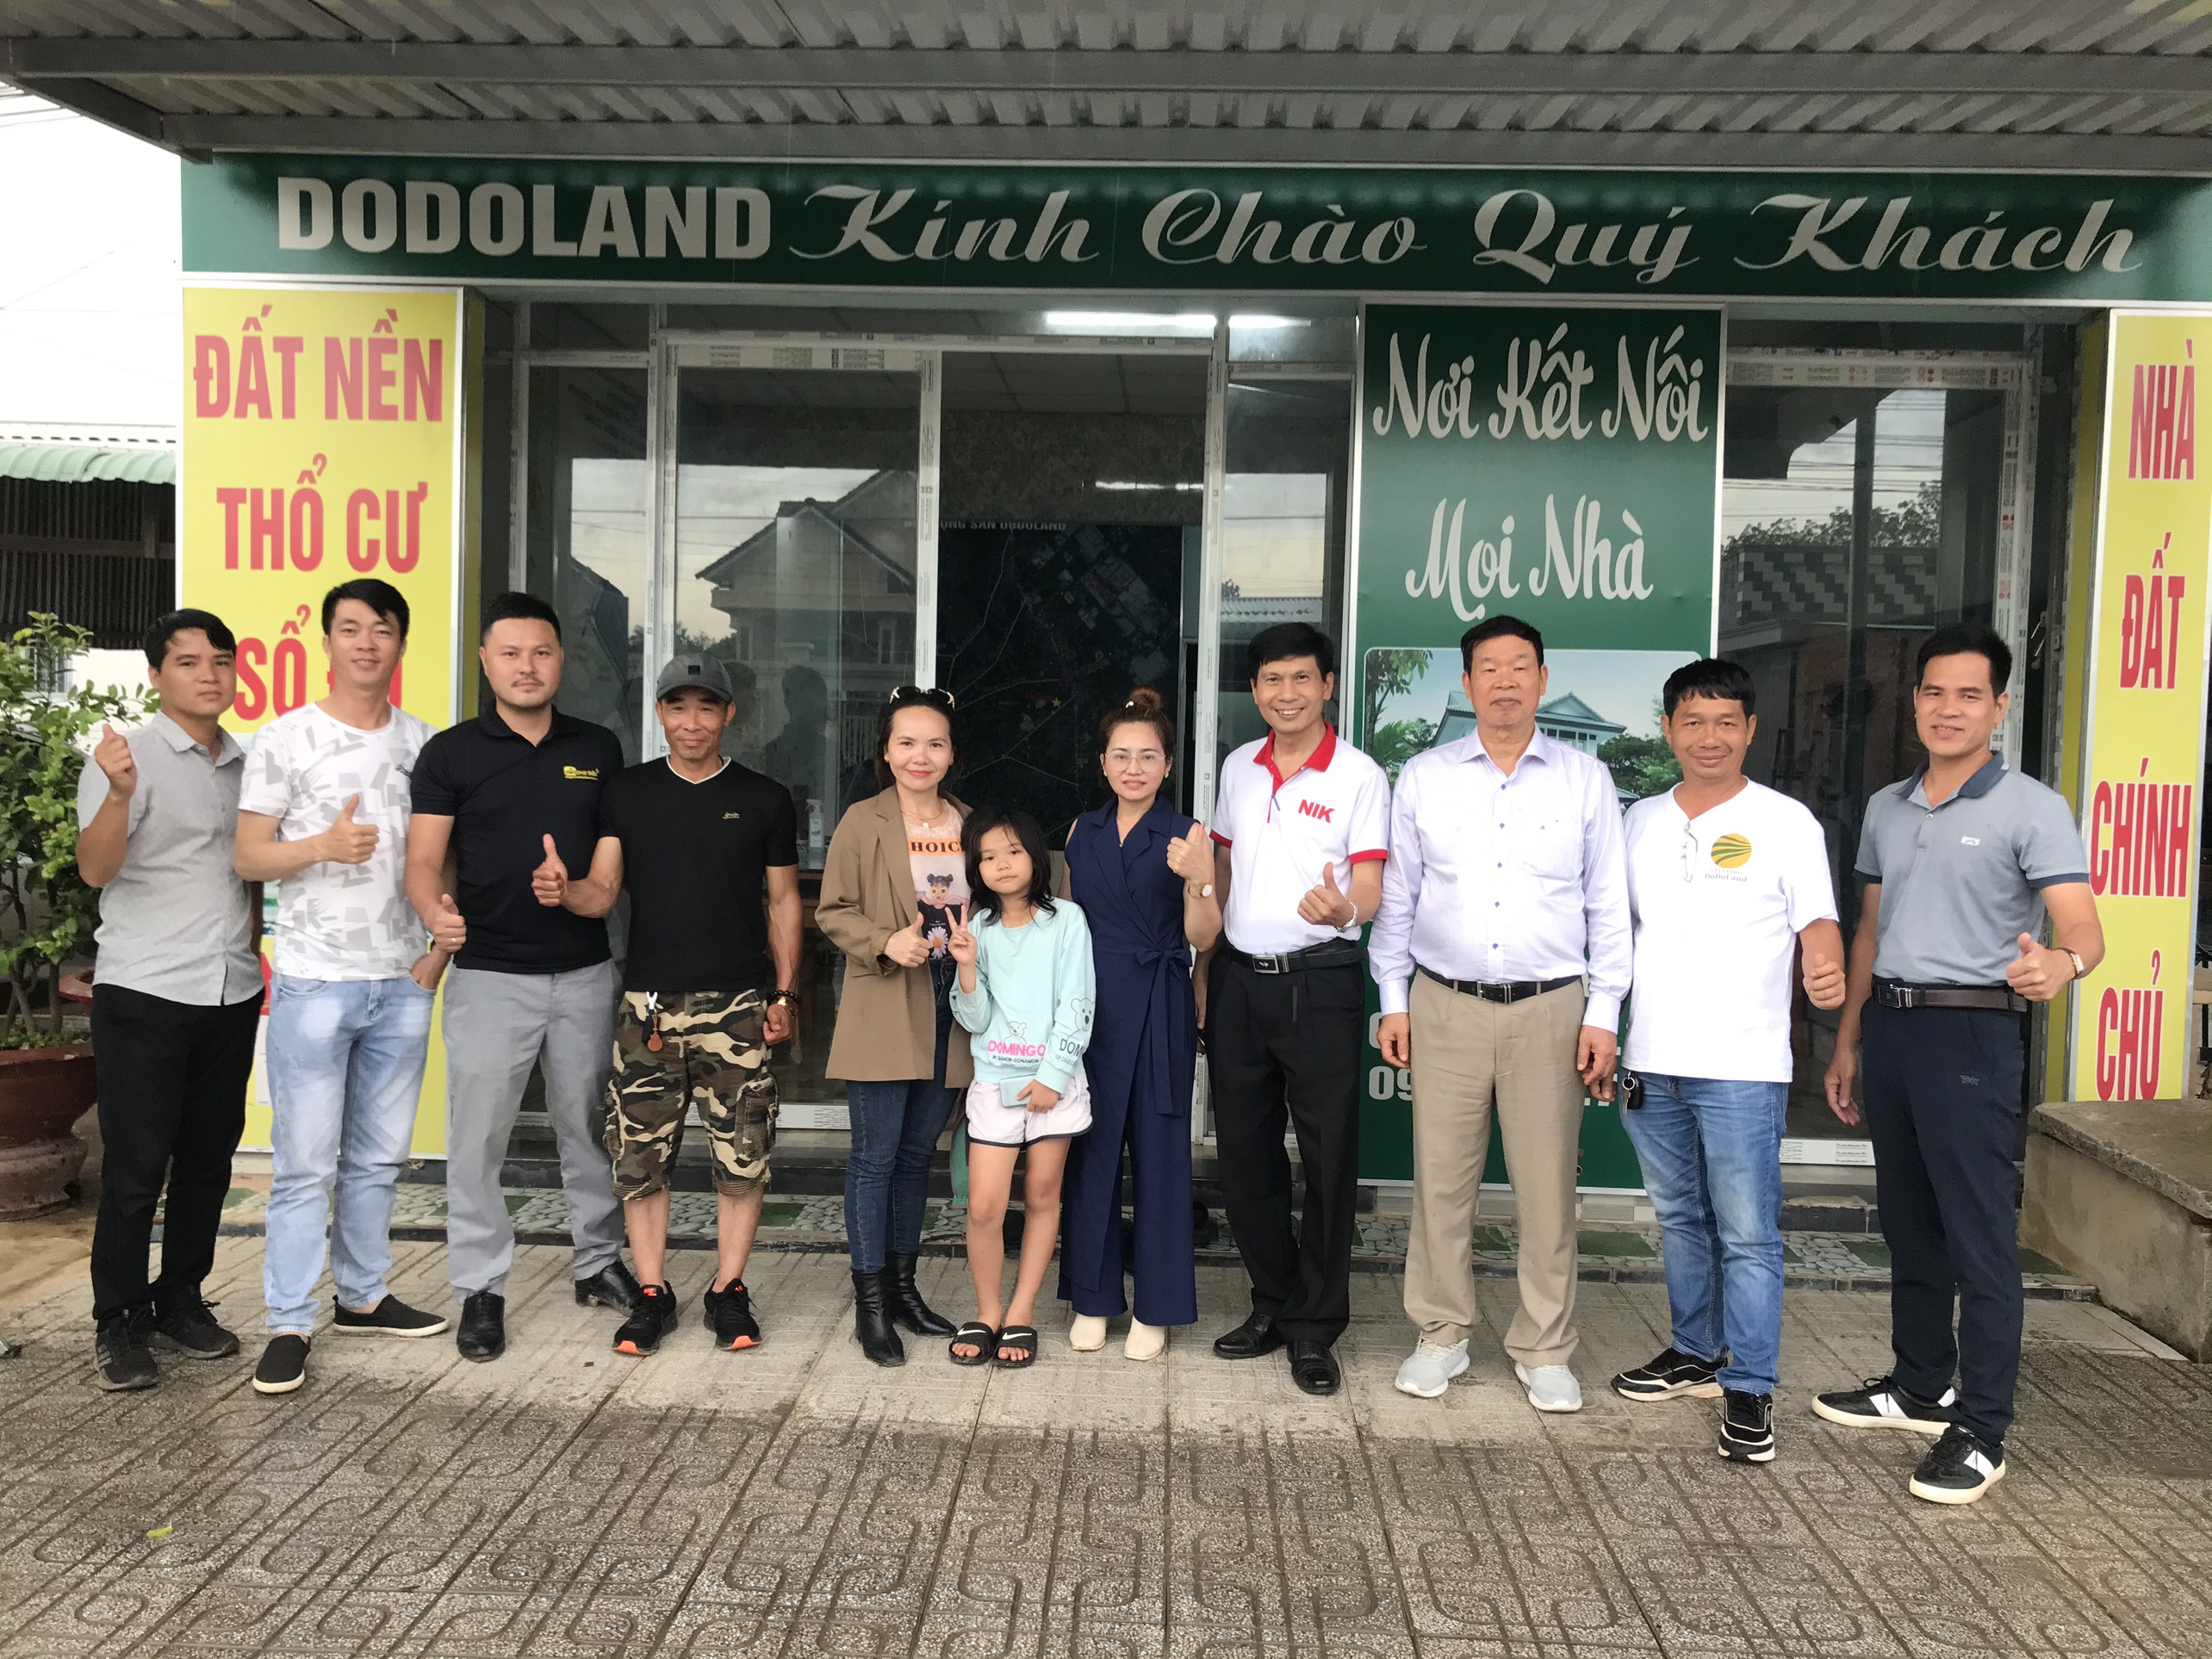 Đoàn dừng chân giao lưu tại Dodoland Tây Ninh